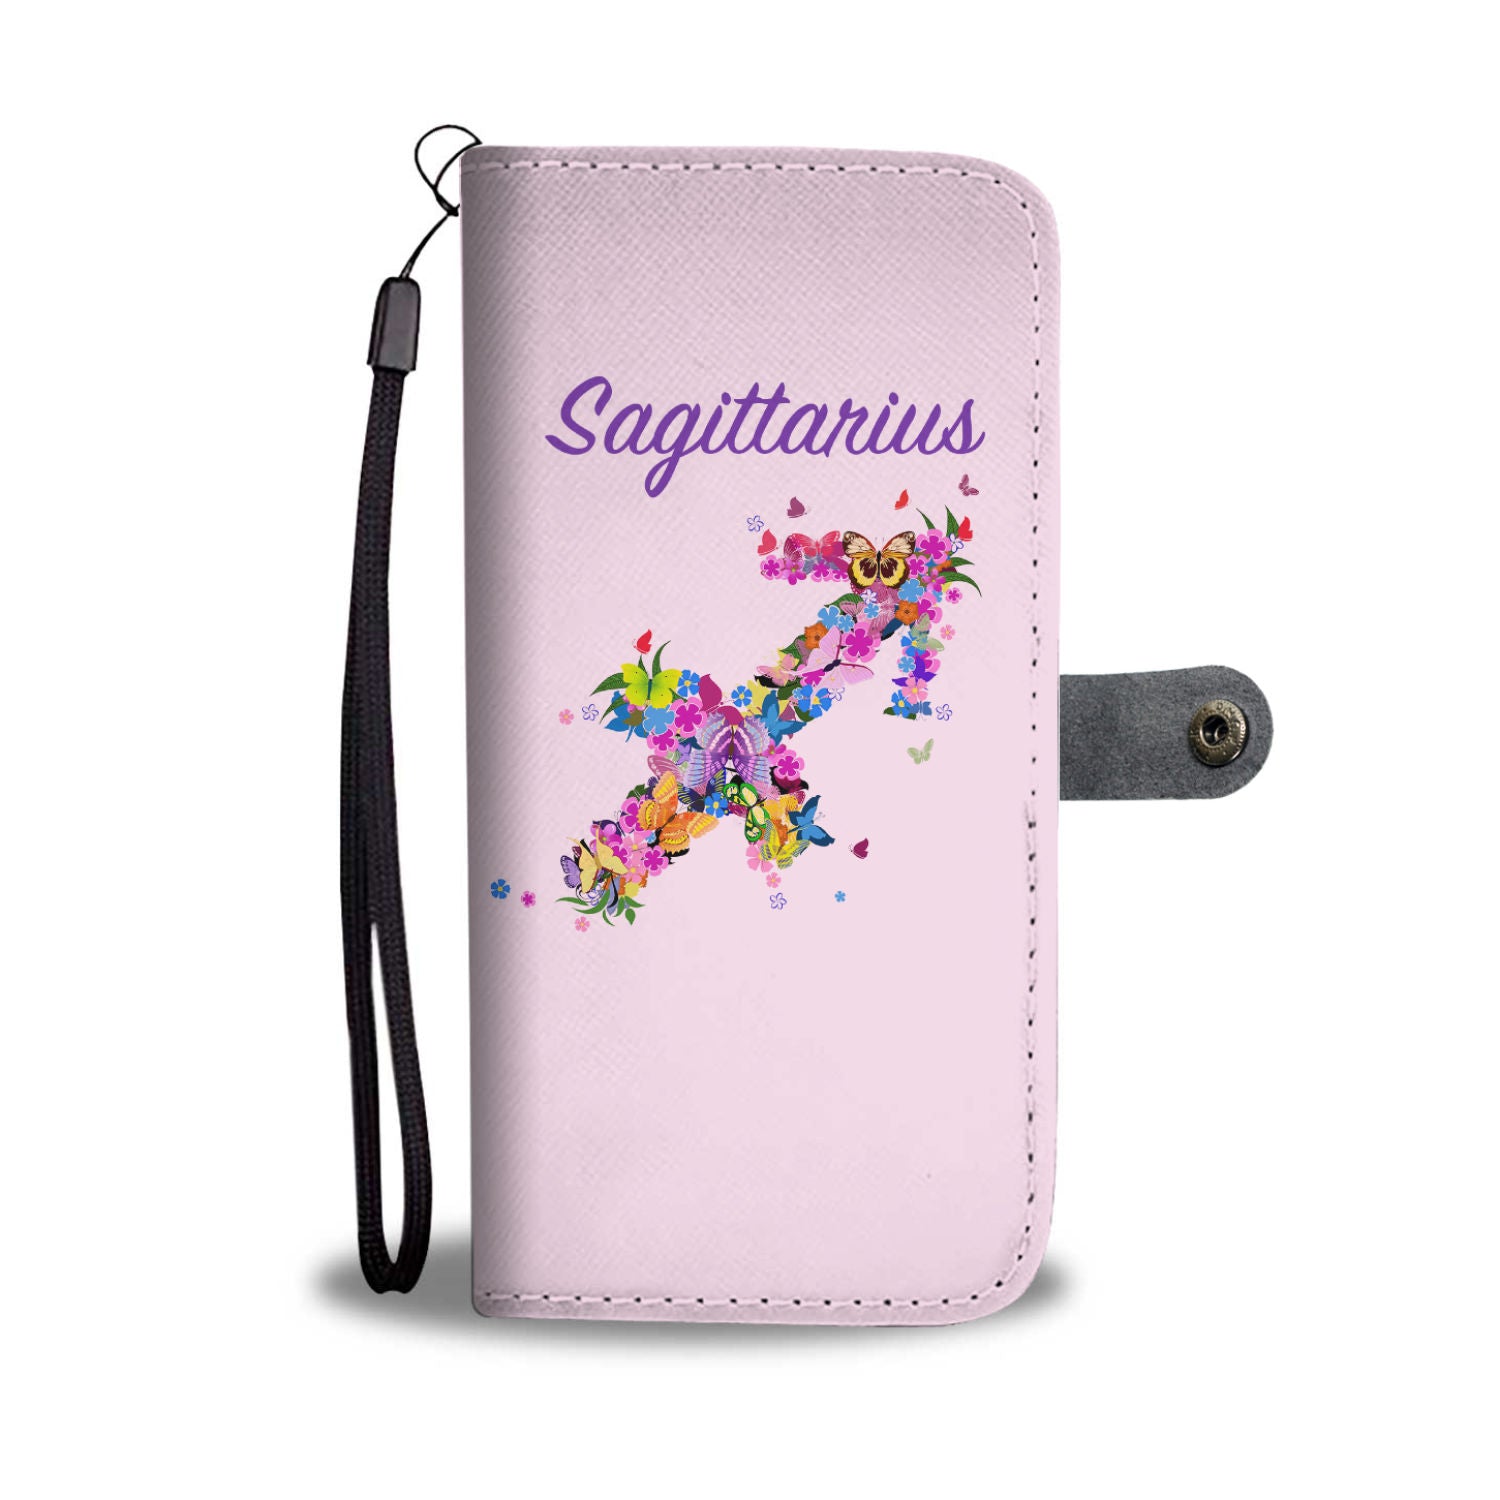 Sagittarius Floral Phone Wallet